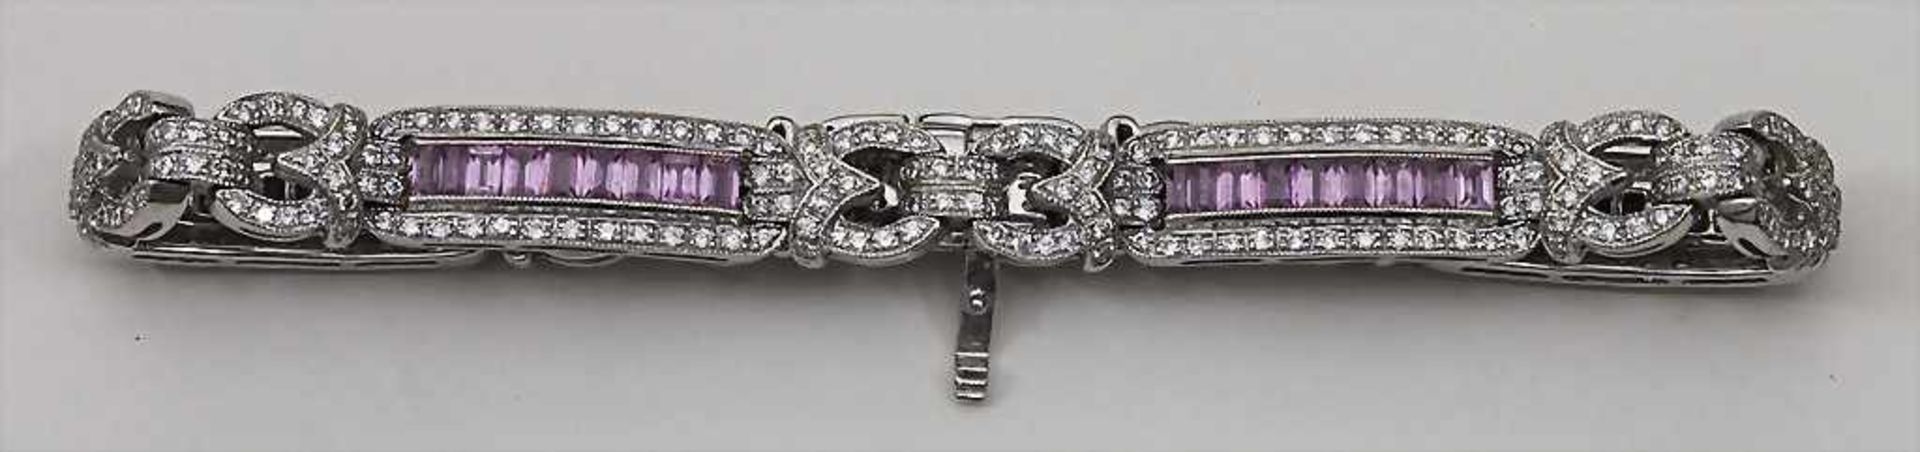 Art Déco Armband mit Saphiren / An Art Déco bracelet, England, um 1925Material: 18 Kt 750/000 WG, - Bild 2 aus 4